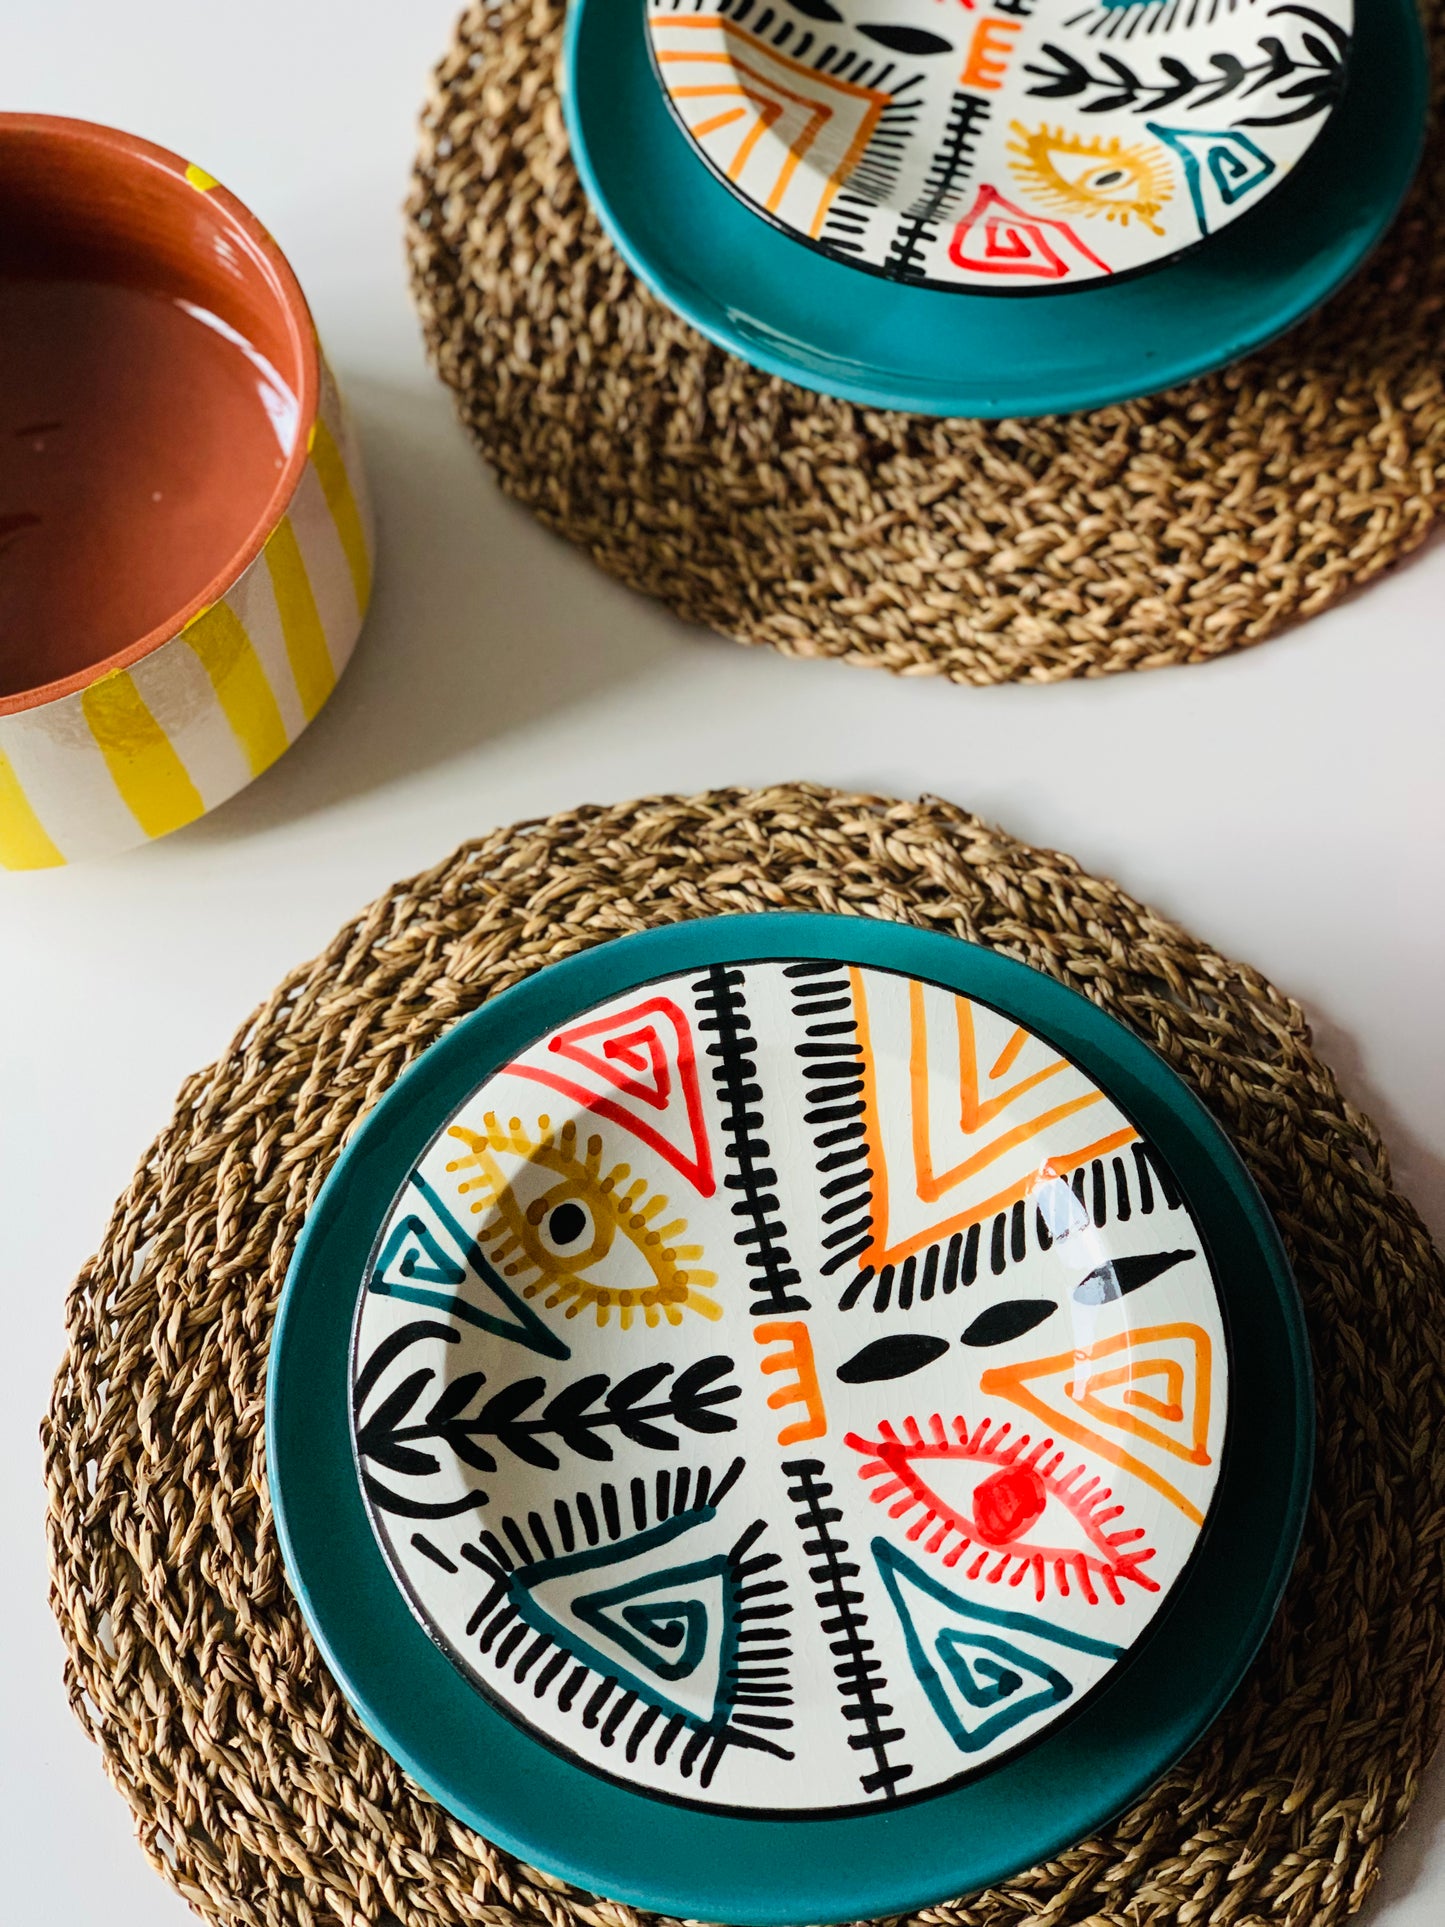 Deze unieke borden hebben 3 pootjes! Deze Marokkaanse unieke borden zijn met verschillende patronen en kleuren te combineren. Helemaal met eigen hand geschilderd en vervaardigd. In klein als groot formaat beschikbaar.   100% uniek en handmade.